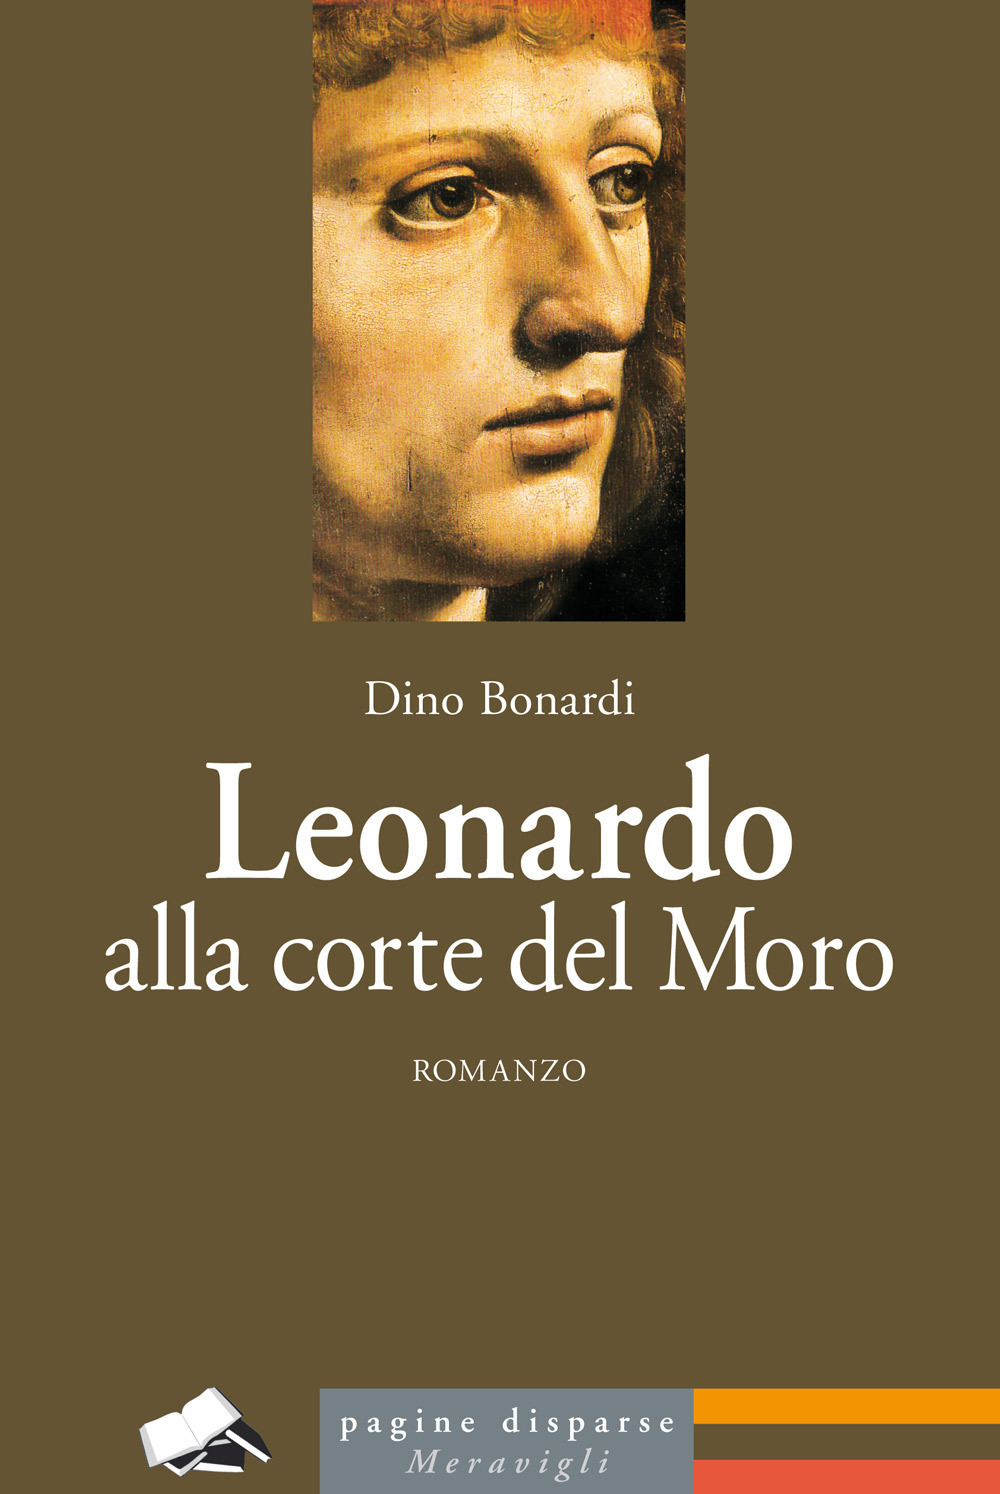 Leonardo alla corte del Moro